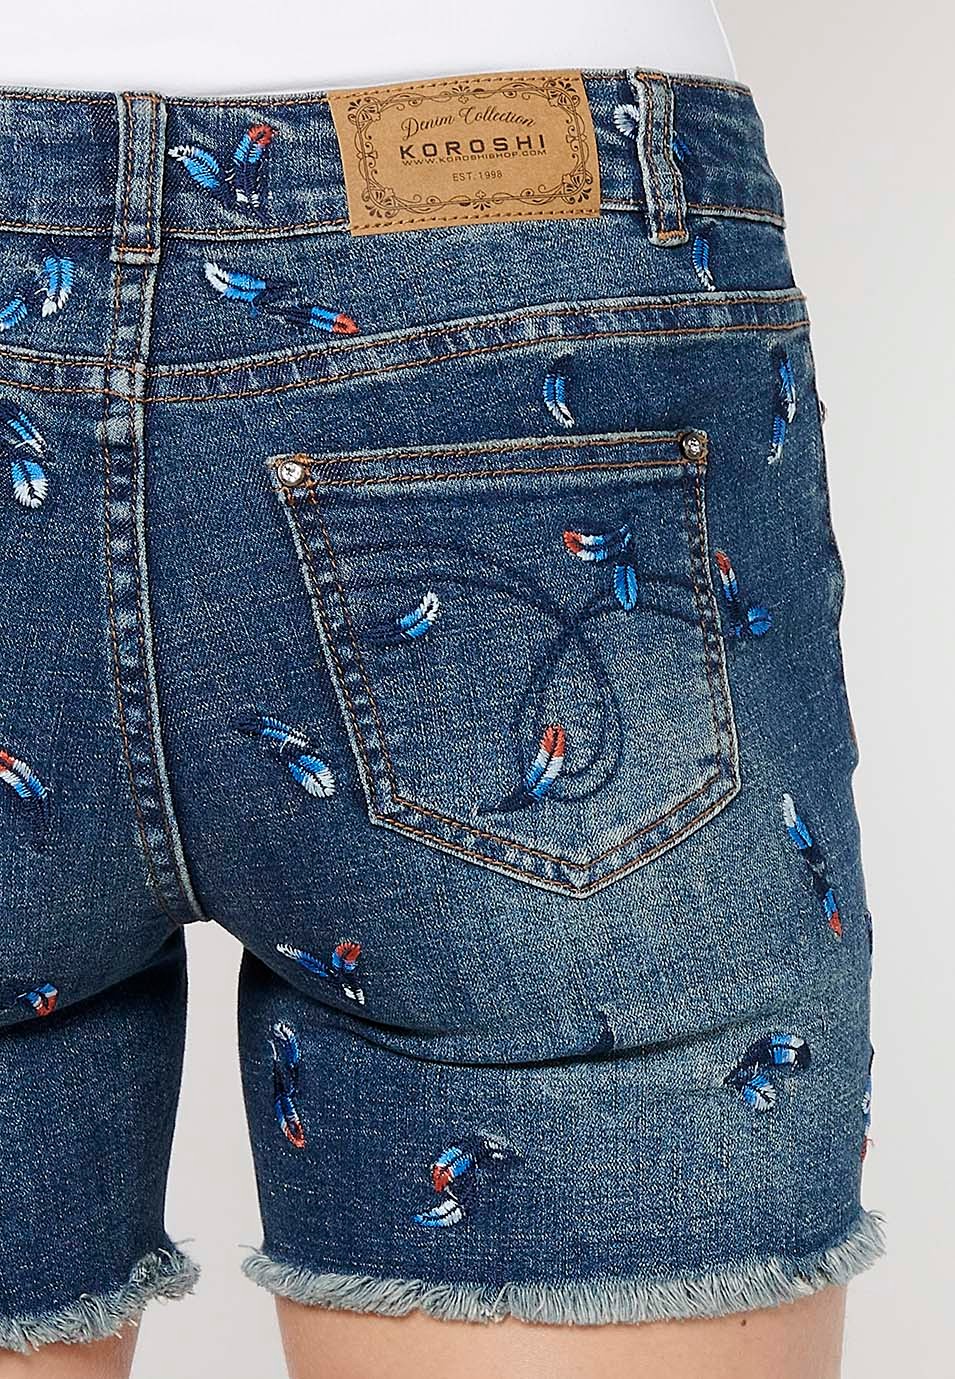 Jeansshorts mit Reißverschluss und Knopfverschluss vorne und besticktem Stoff mit fünf Taschen, einer blauen Taschentasche für Damen 7